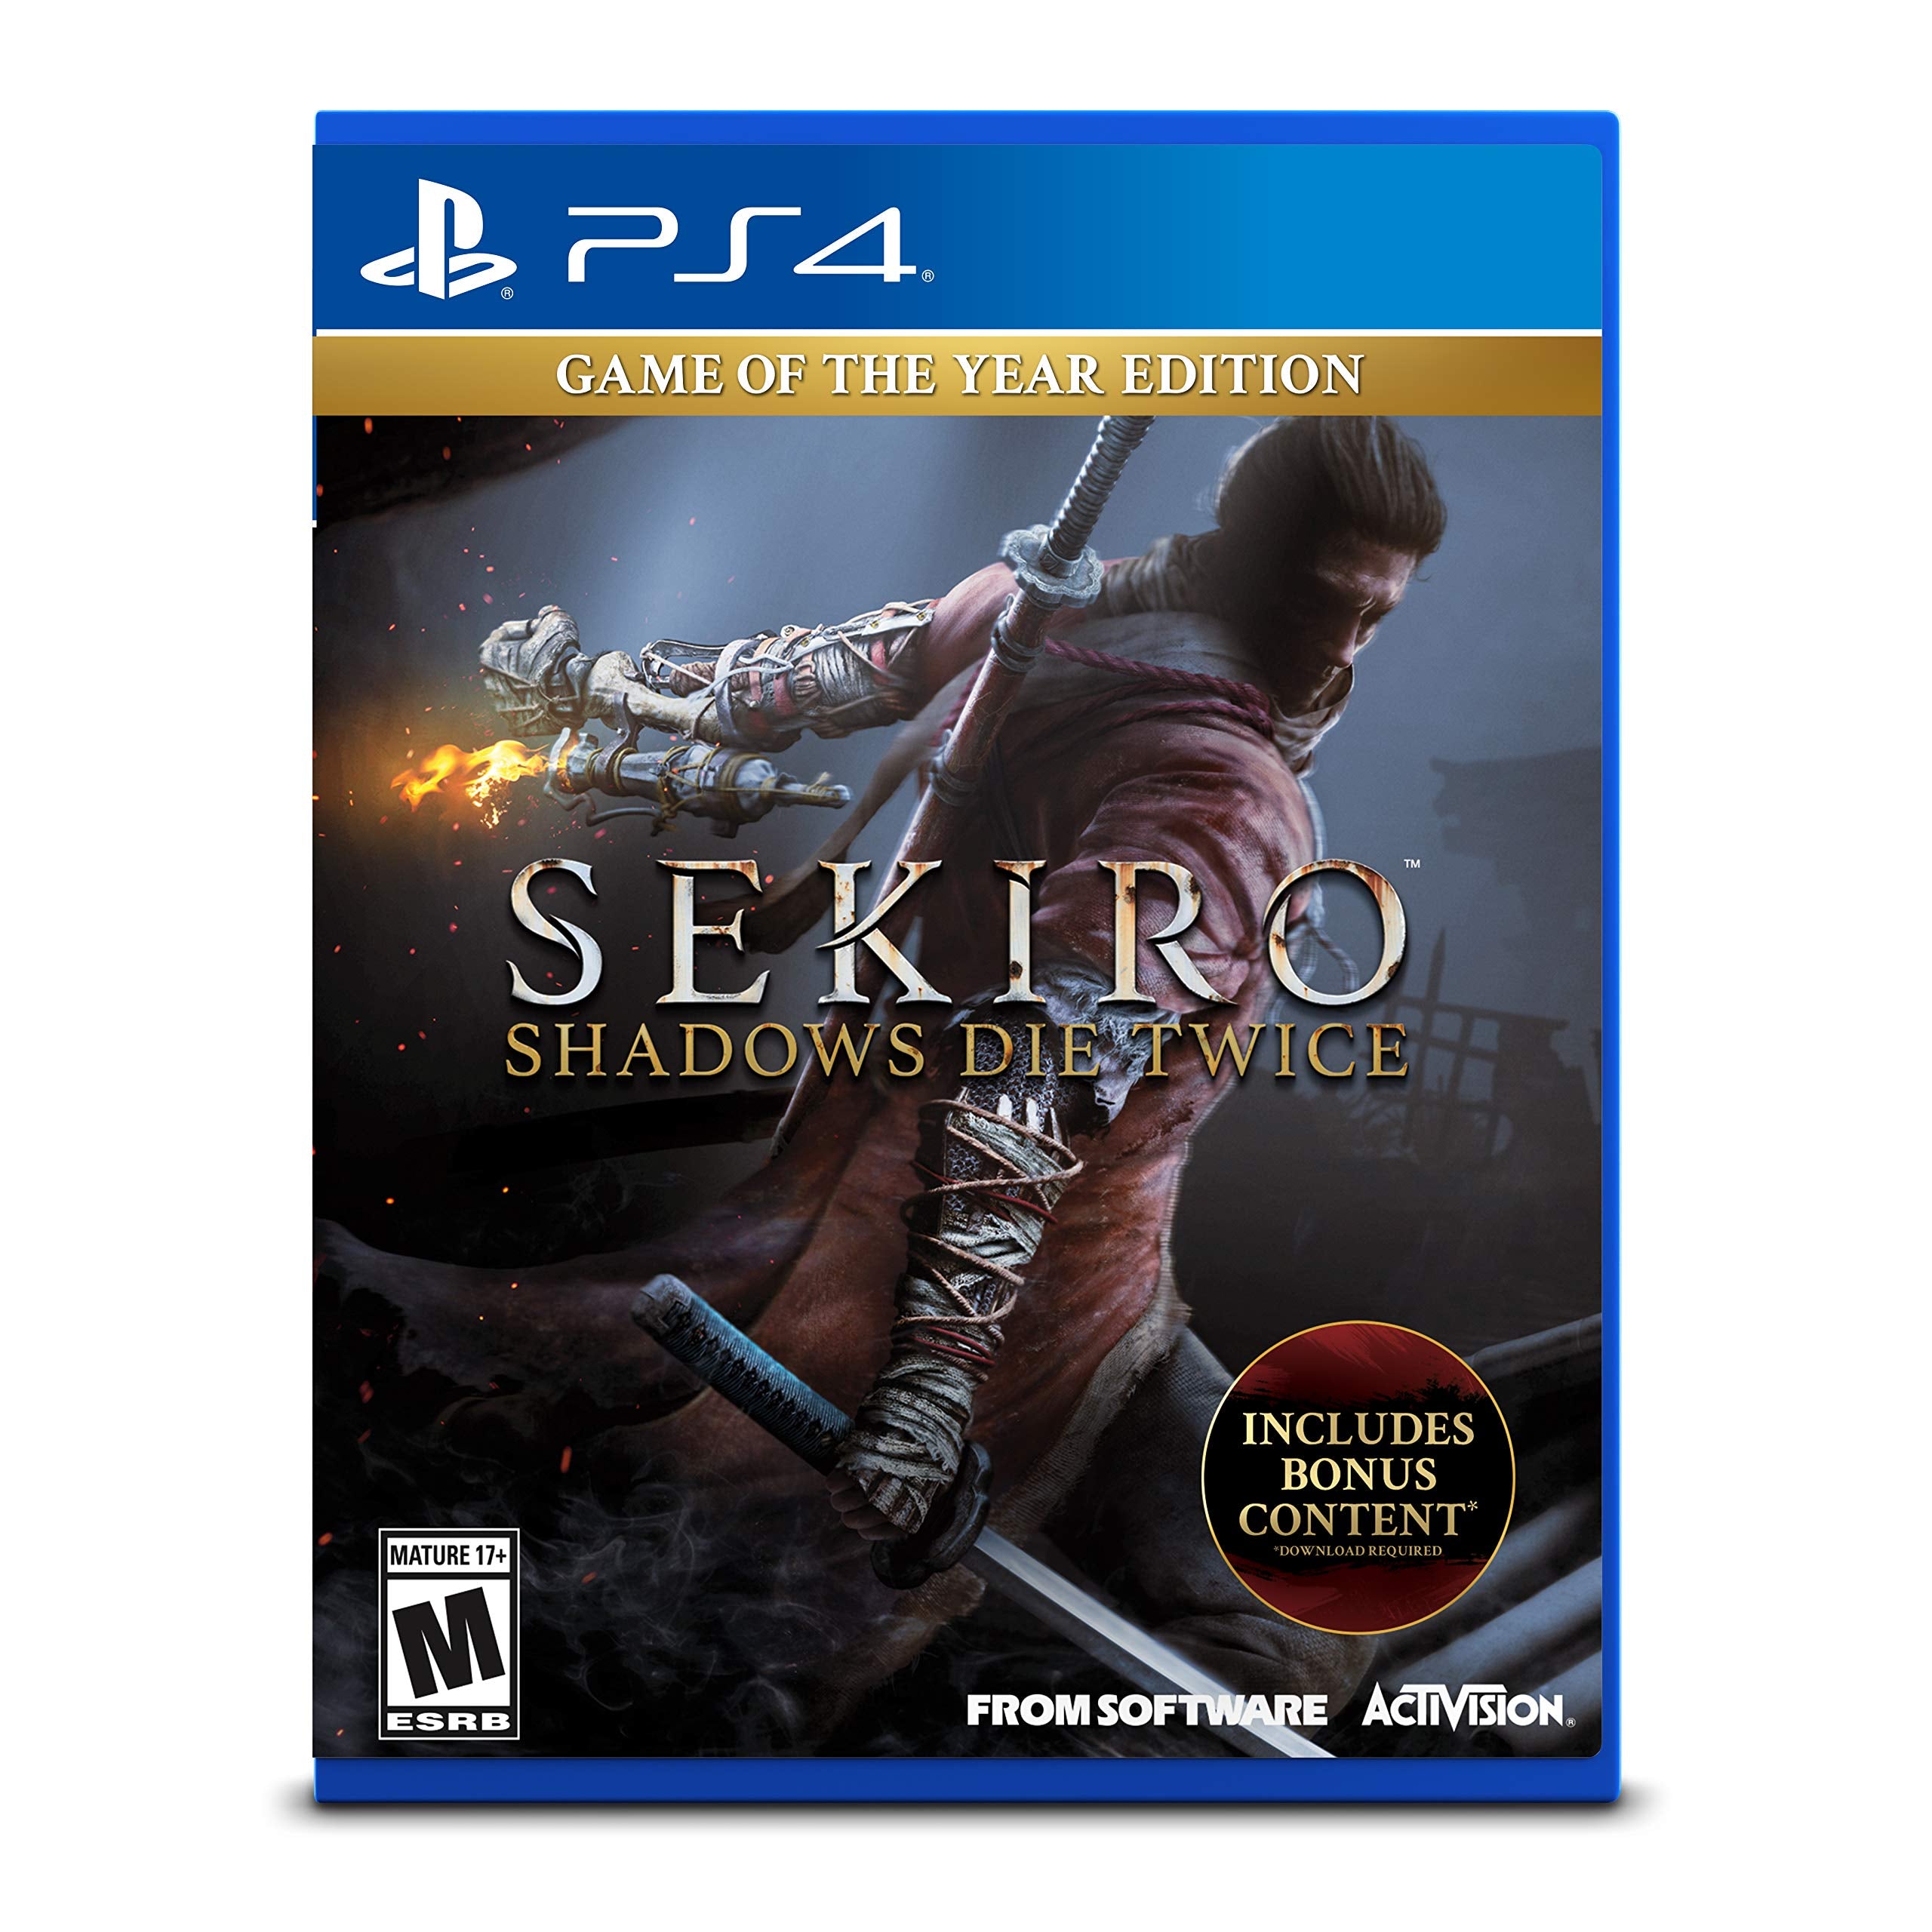 PS4 Sekiro: Shadows Die Twice - Edizione gioco dell'anno GOTY Disponibilità immediata Activision Blizzard